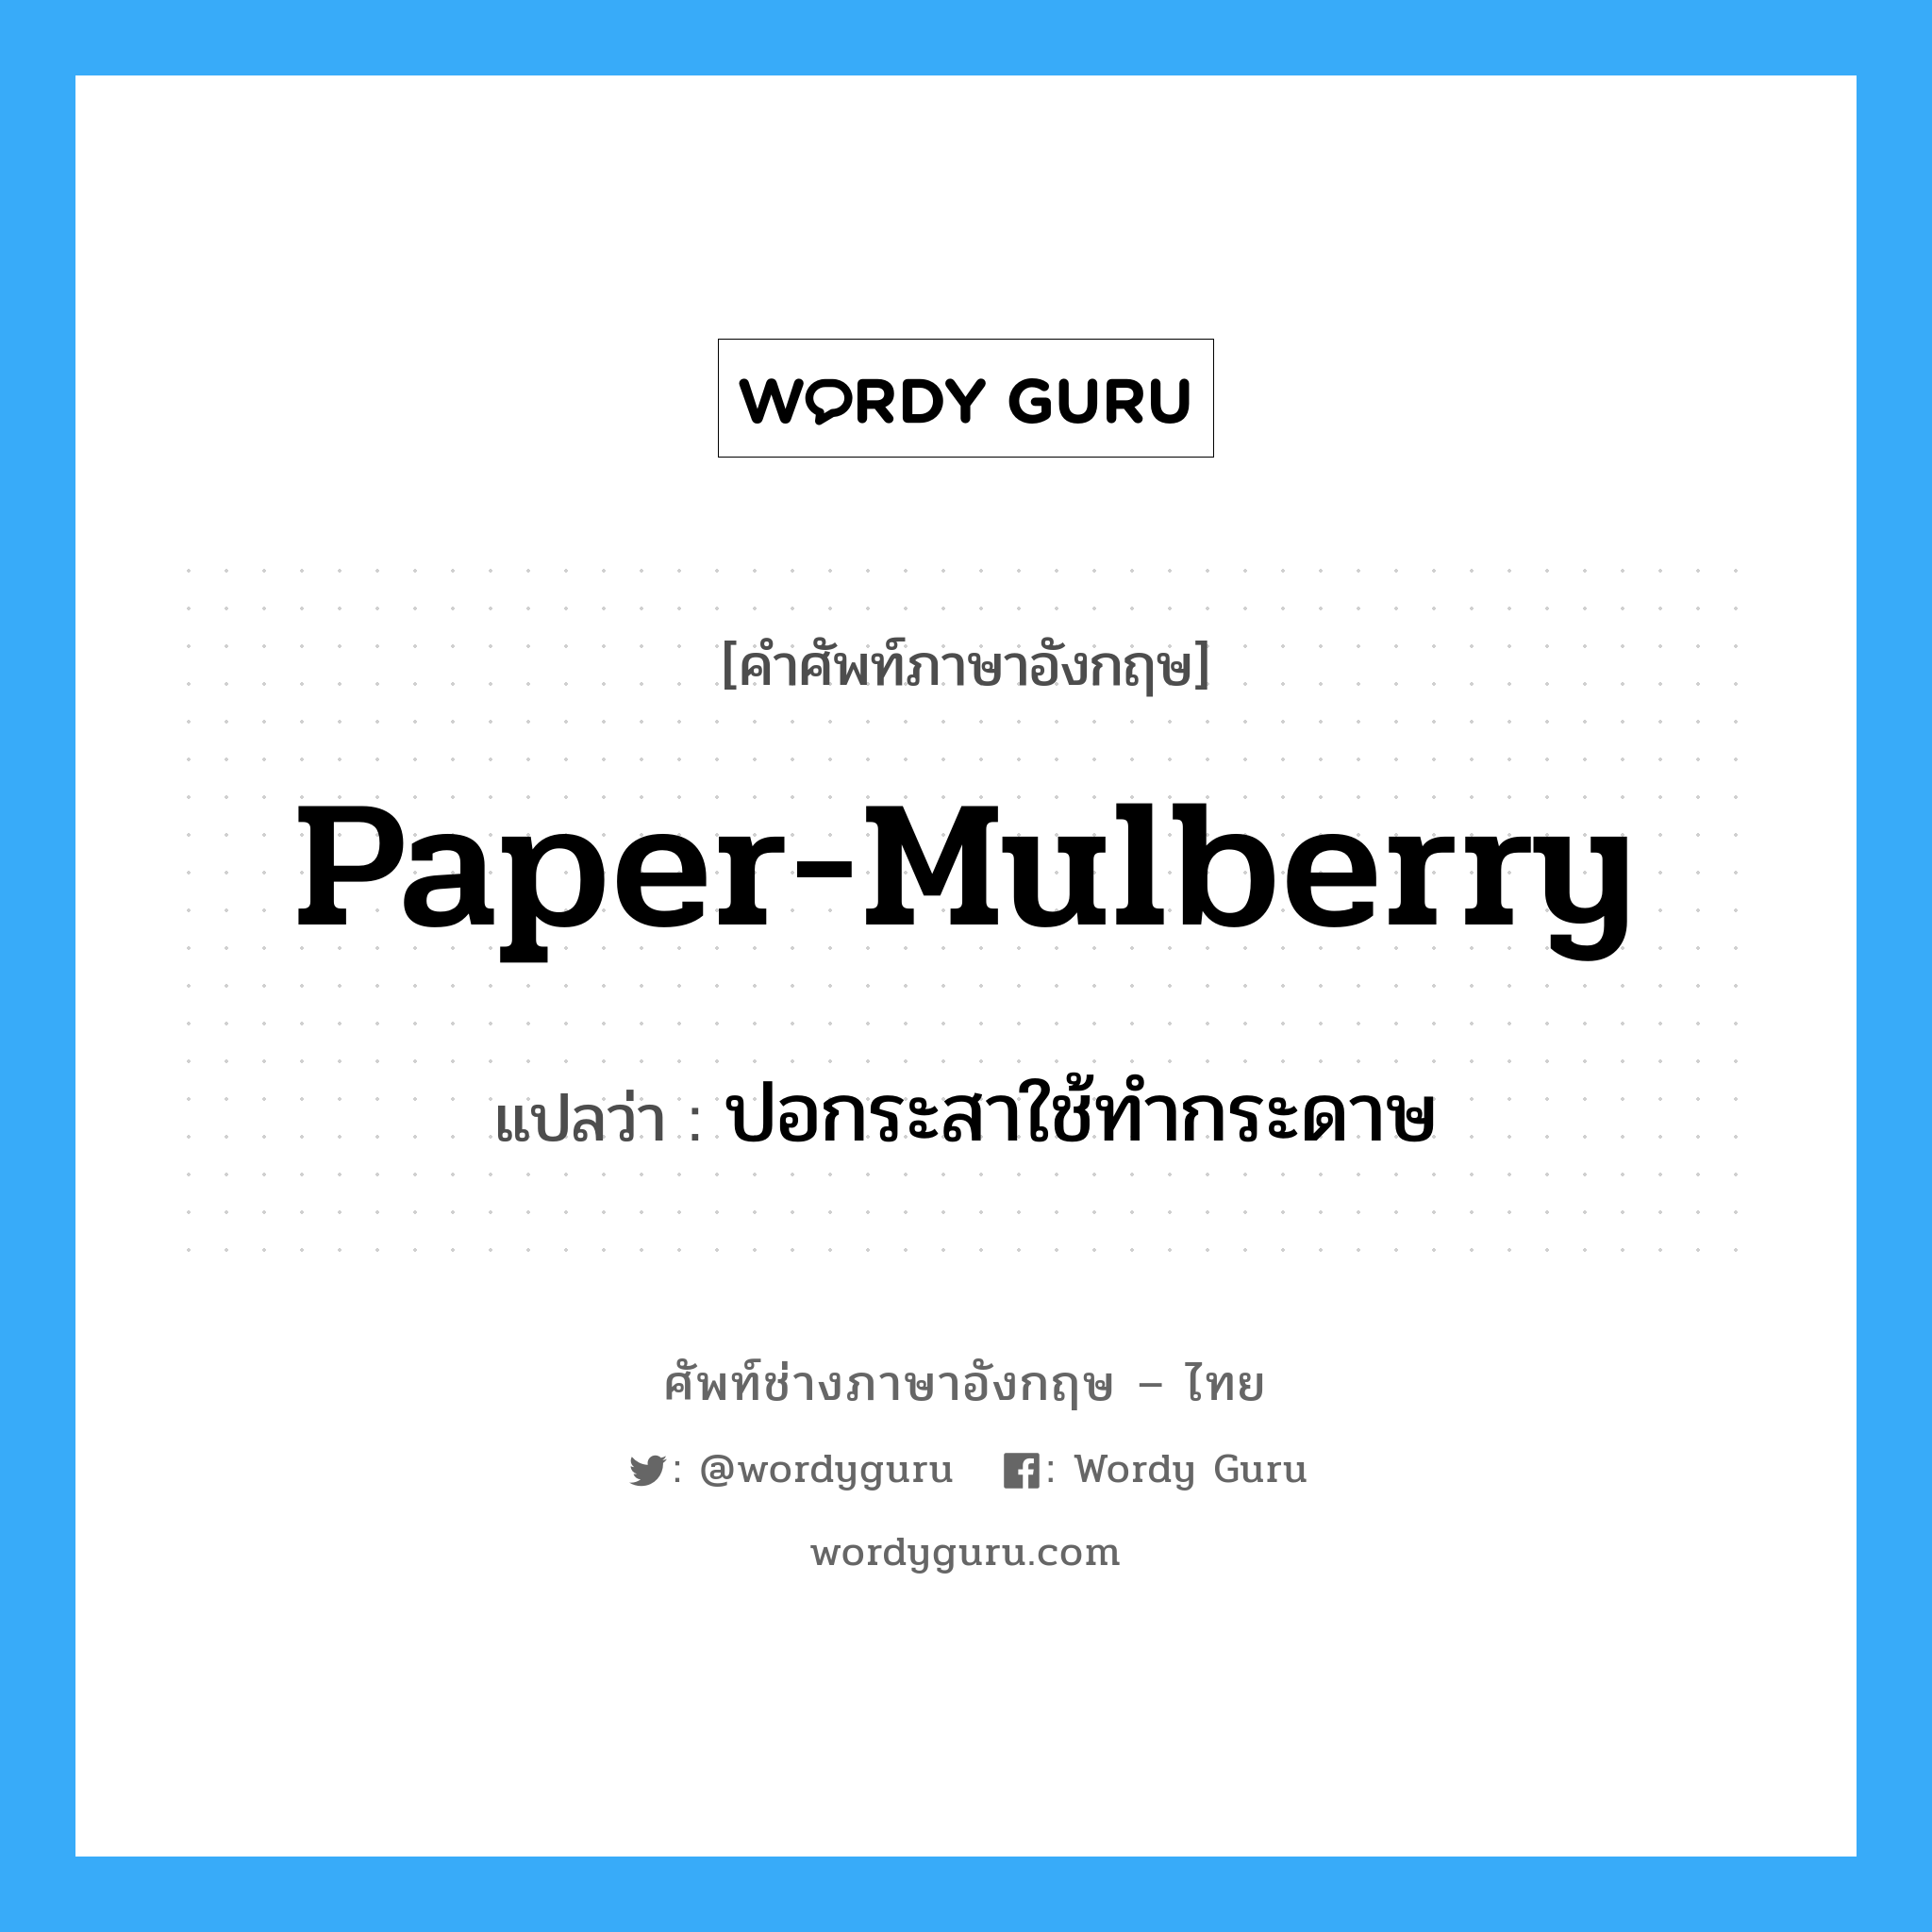 ปอกระสาใช้ทำกระดาษ ภาษาอังกฤษ?, คำศัพท์ช่างภาษาอังกฤษ - ไทย ปอกระสาใช้ทำกระดาษ คำศัพท์ภาษาอังกฤษ ปอกระสาใช้ทำกระดาษ แปลว่า paper-mulberry